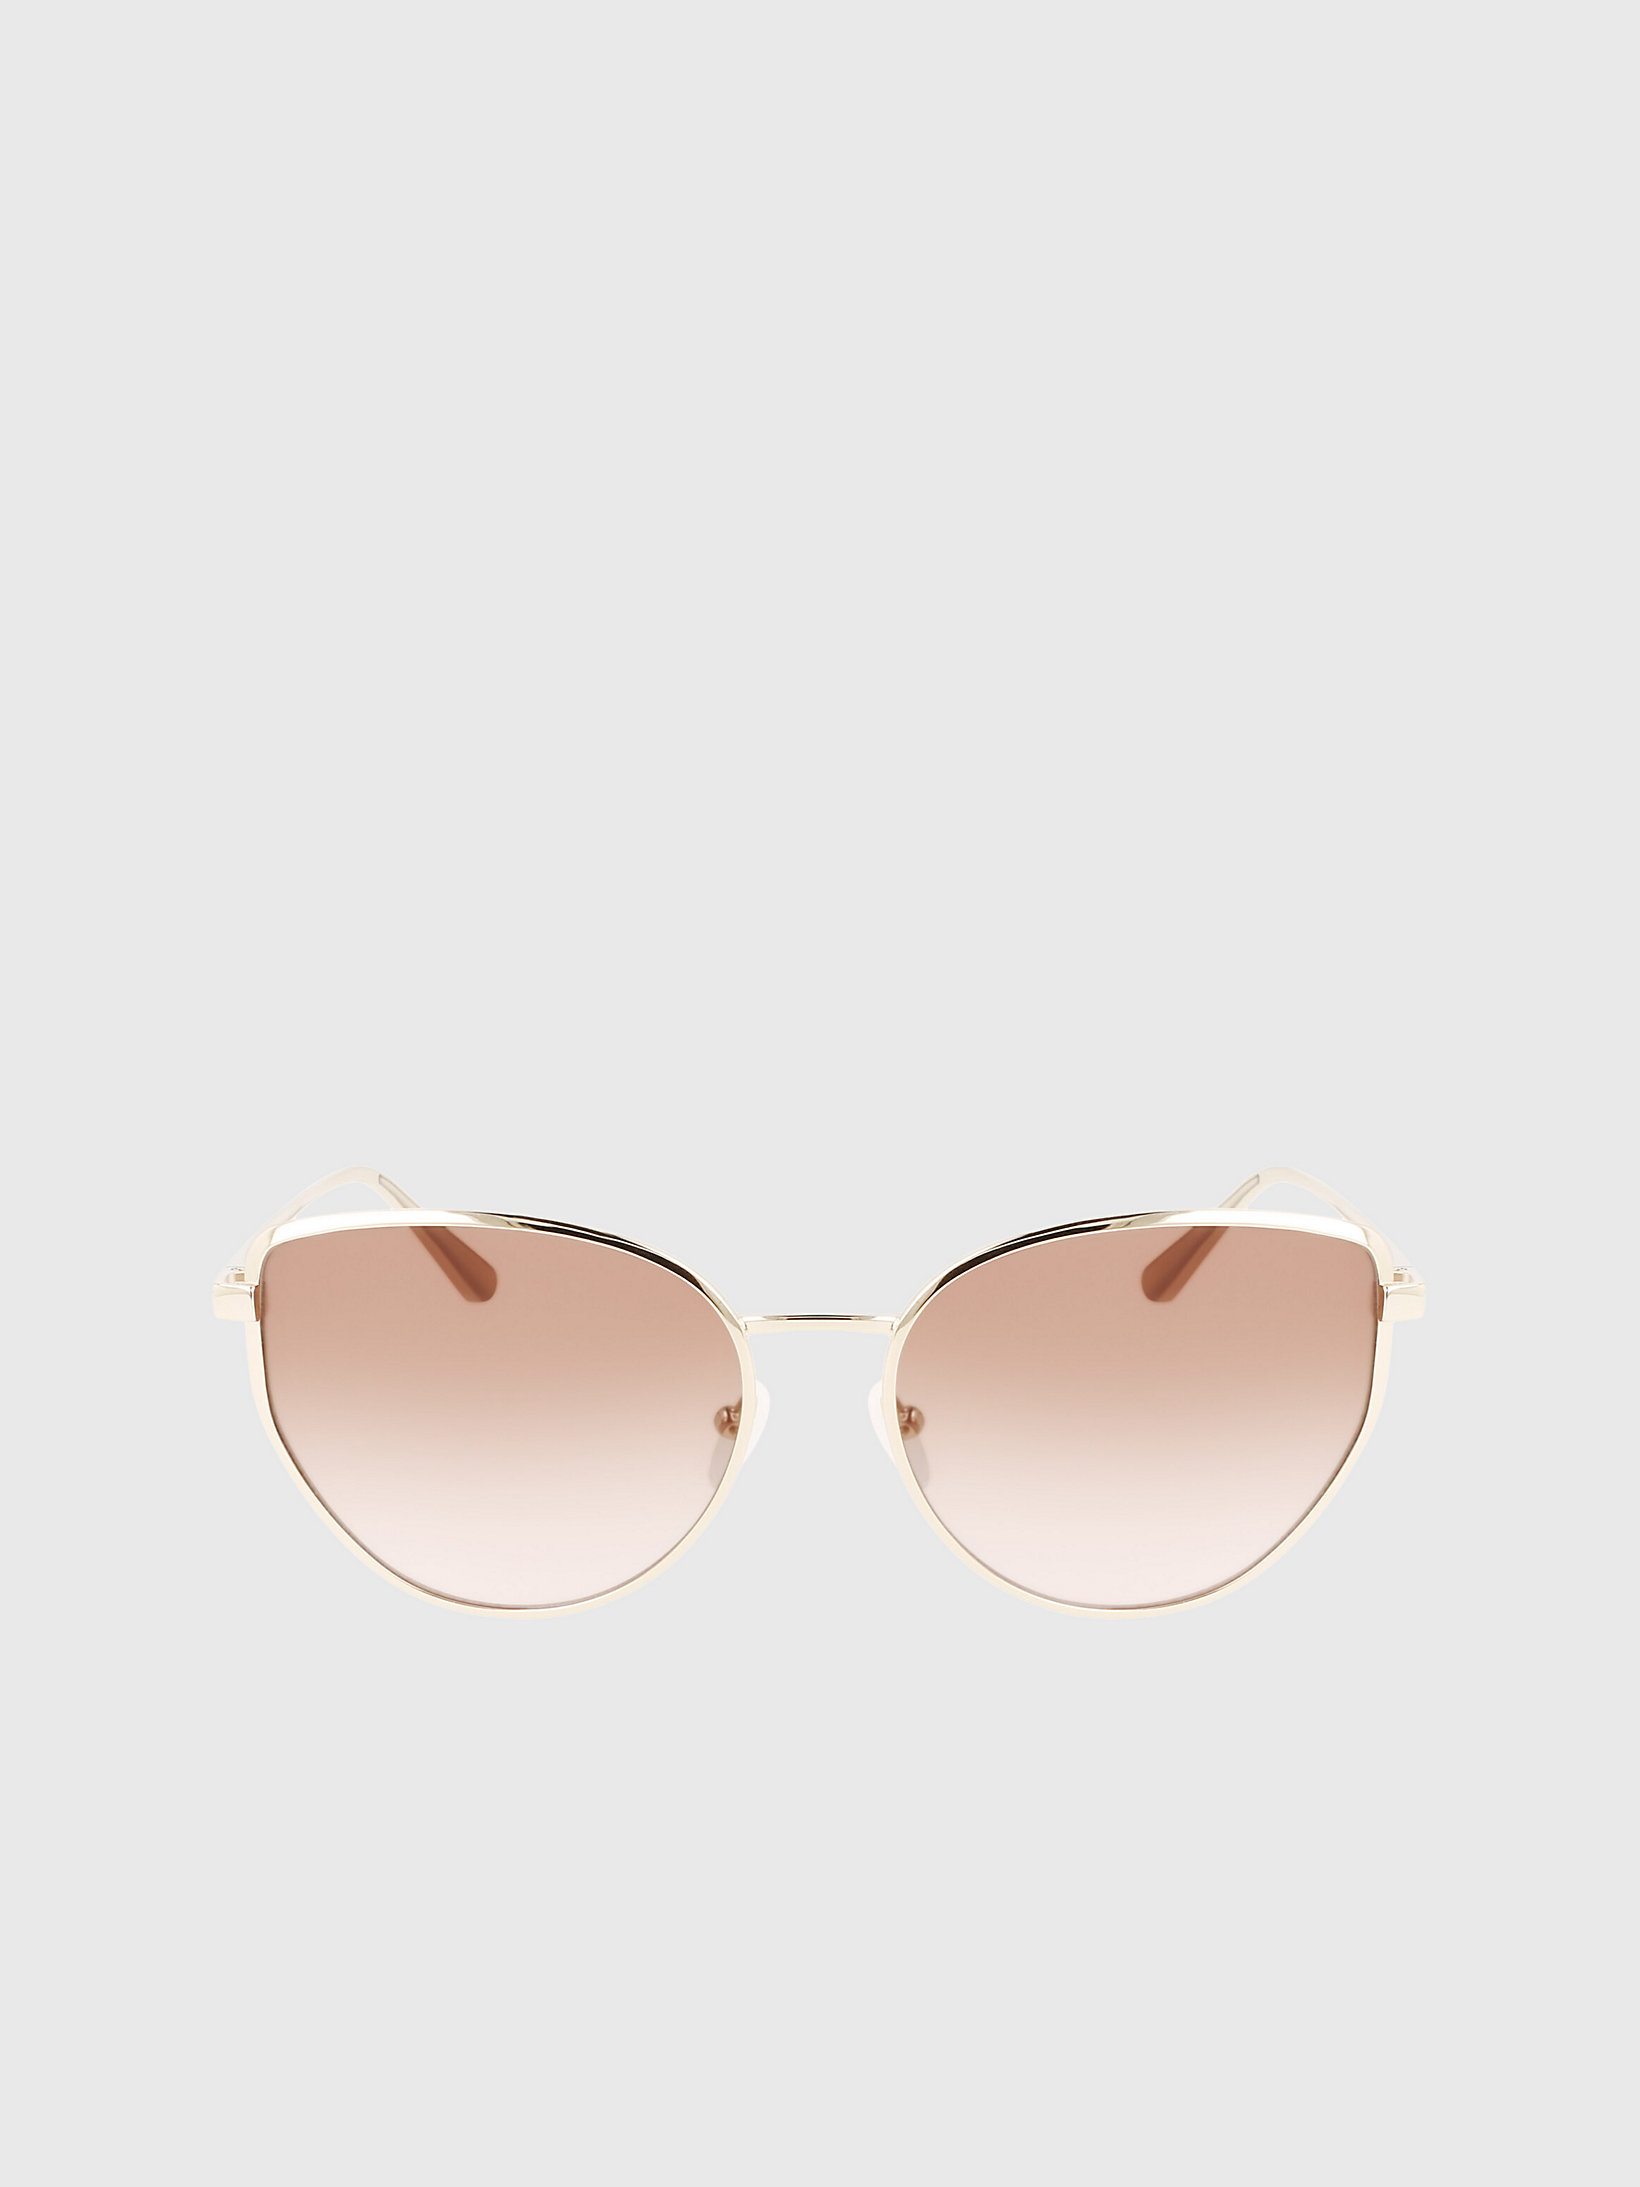 Gold/blush > Rechteckige Sonnenbrille Ck22113s > undefined Damen - Calvin Klein